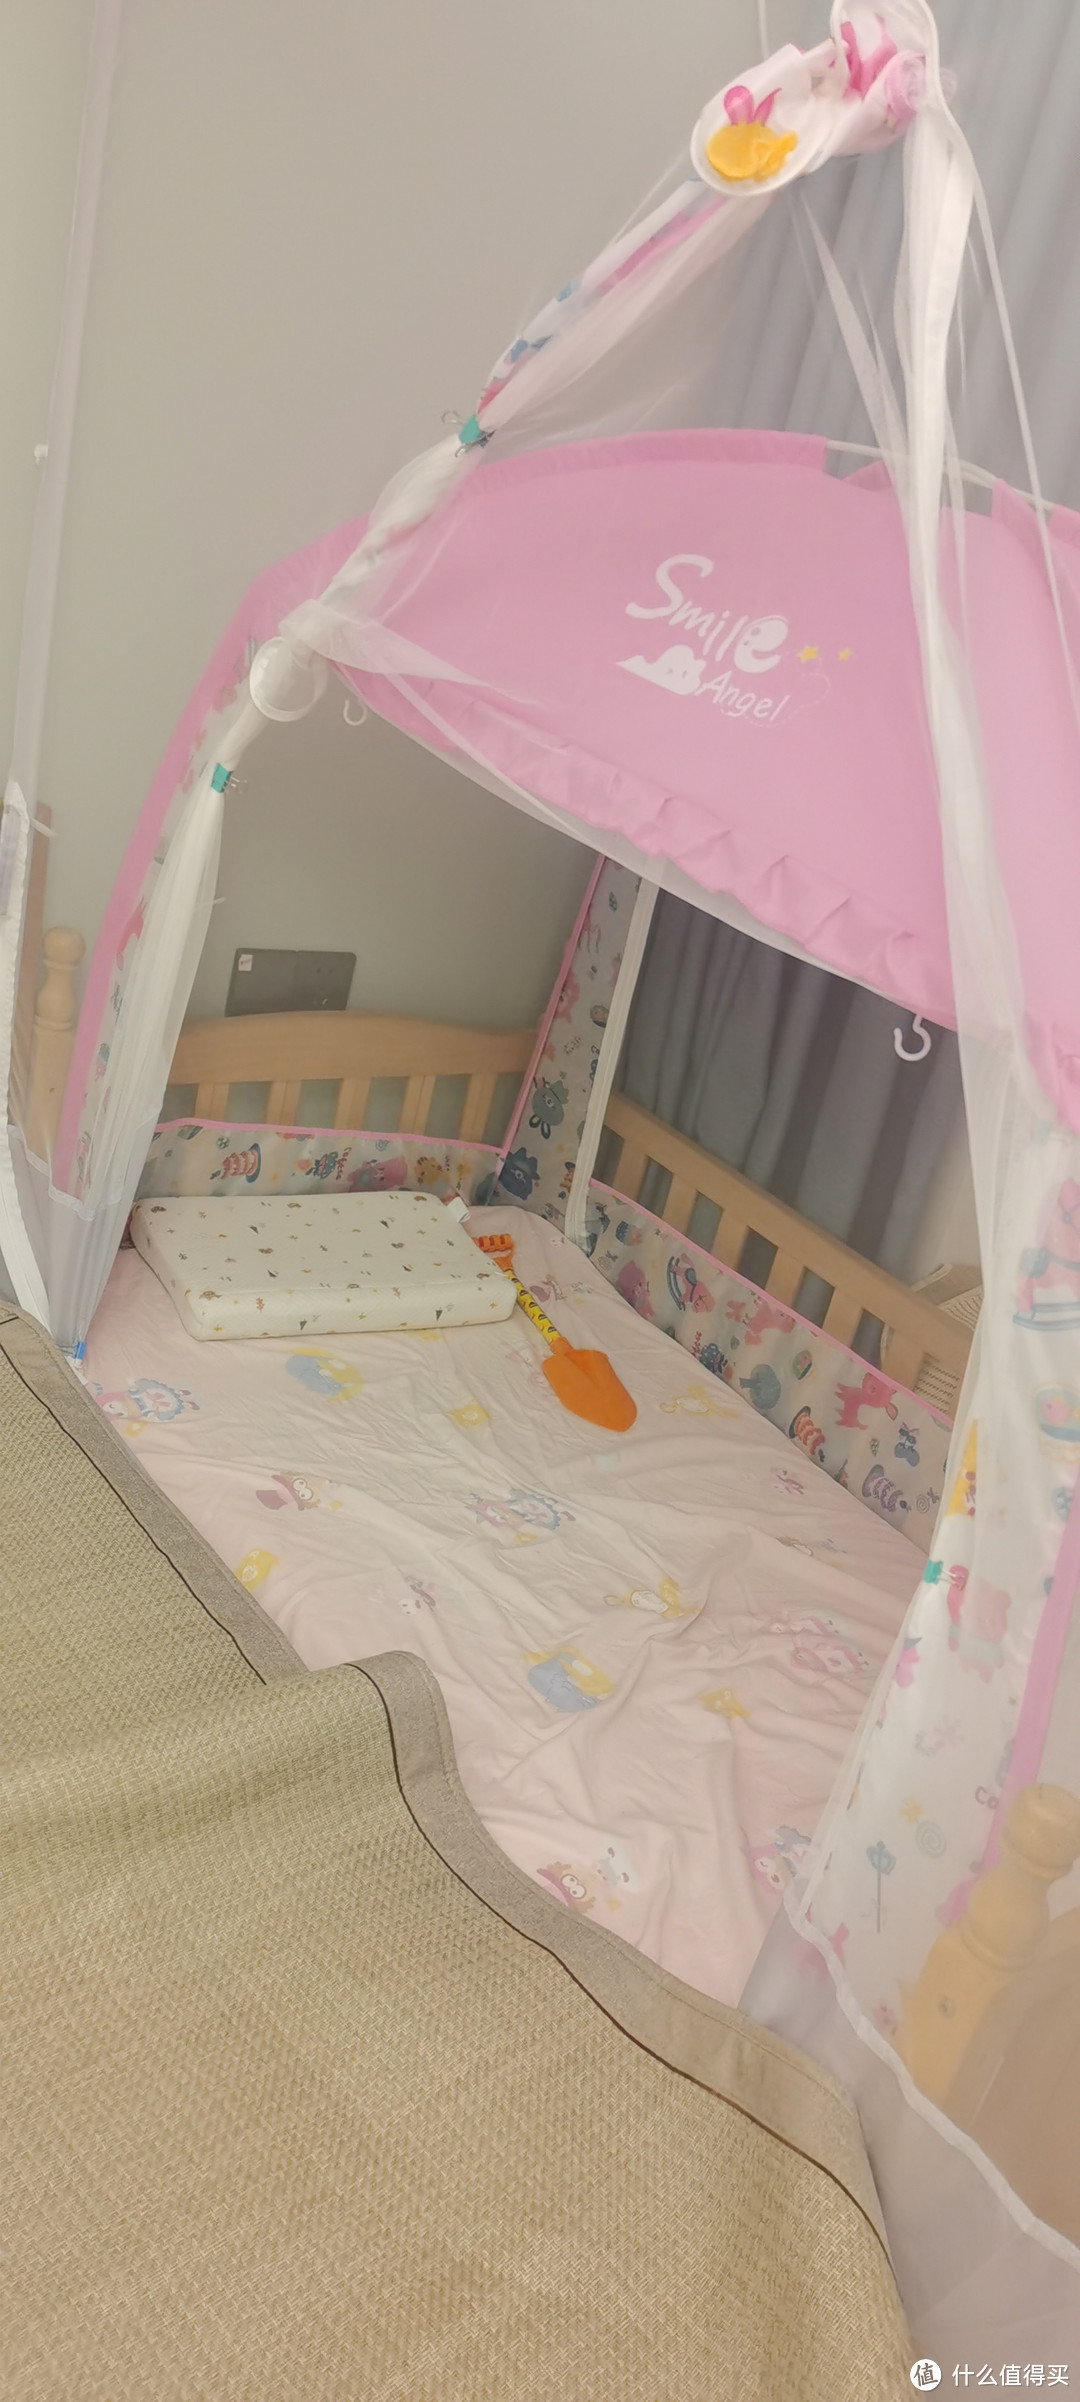 今年618最得意之作，这个蚊帐组合方案完美解决大人床+婴儿床防蚊难题